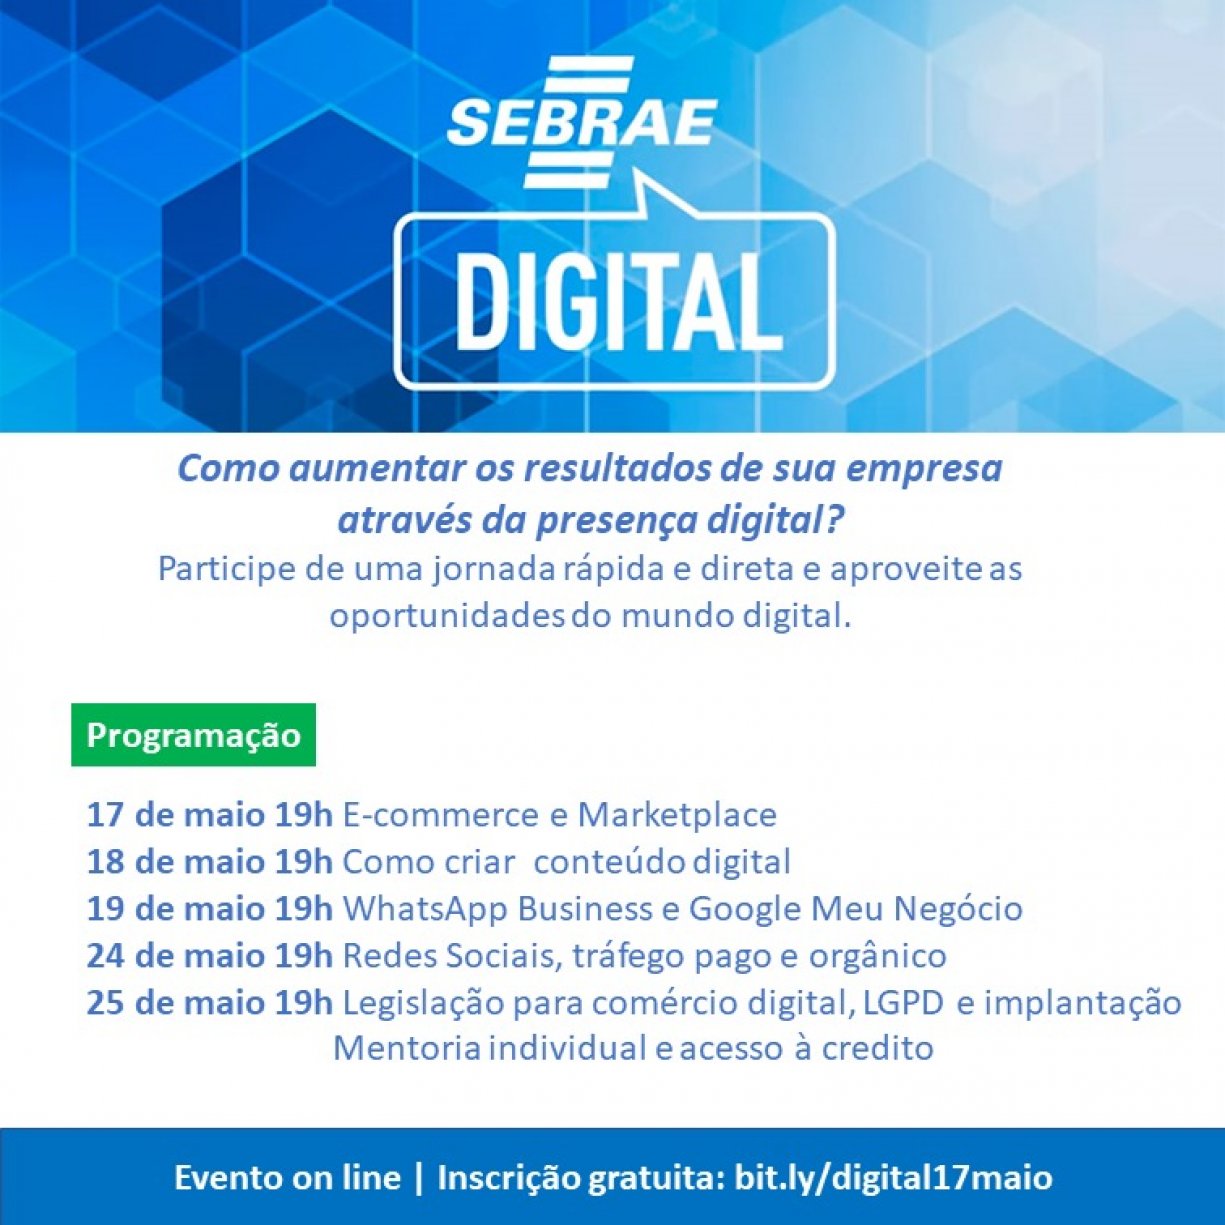 SEBRAE ensinará balsamense a vender pela internet em curso 100% gratuito